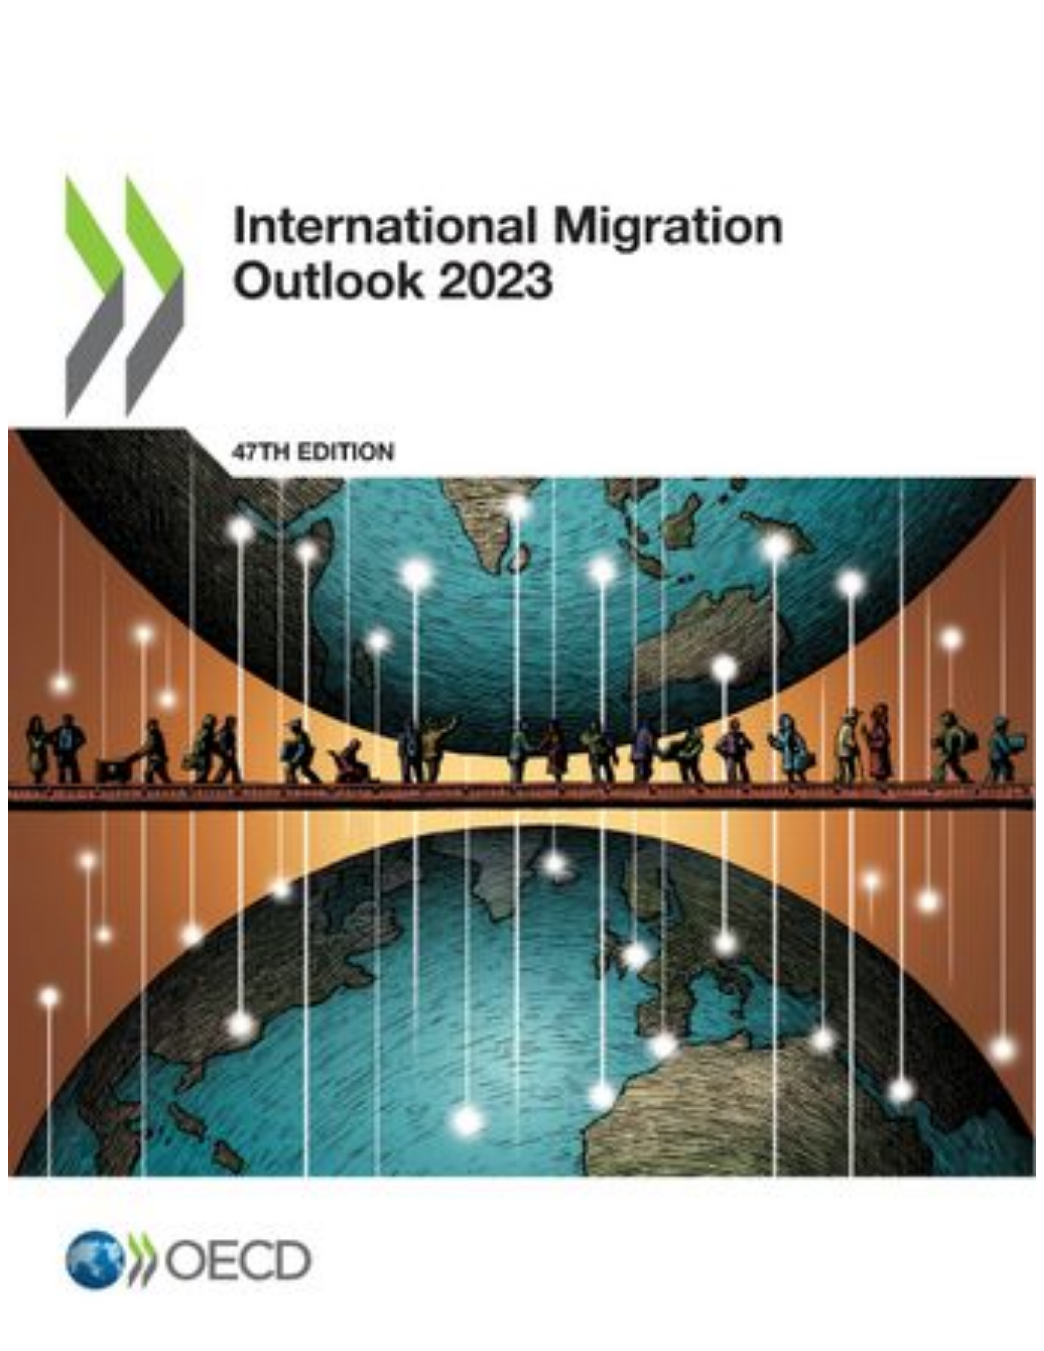 ﻿根据刚刚发布的《2023年国际移民展望》（InternationalMigrationOutlook2023），2022年全球向经合组织国家的移民达到了前所未有的水平。其中，永久移民(permanentmigration)（不包括乌克兰难民）数量达到610万人，比2021年增长26%，是至少自2005年以来的最高水平。在38个经合组织国家中，有15个国家在2022年的永久移民人数达到了过去15年来的最高水平，其中加拿大和英国都达到历史最高纪录。移工的增加是一个促成因素，因为移徙工人帮...